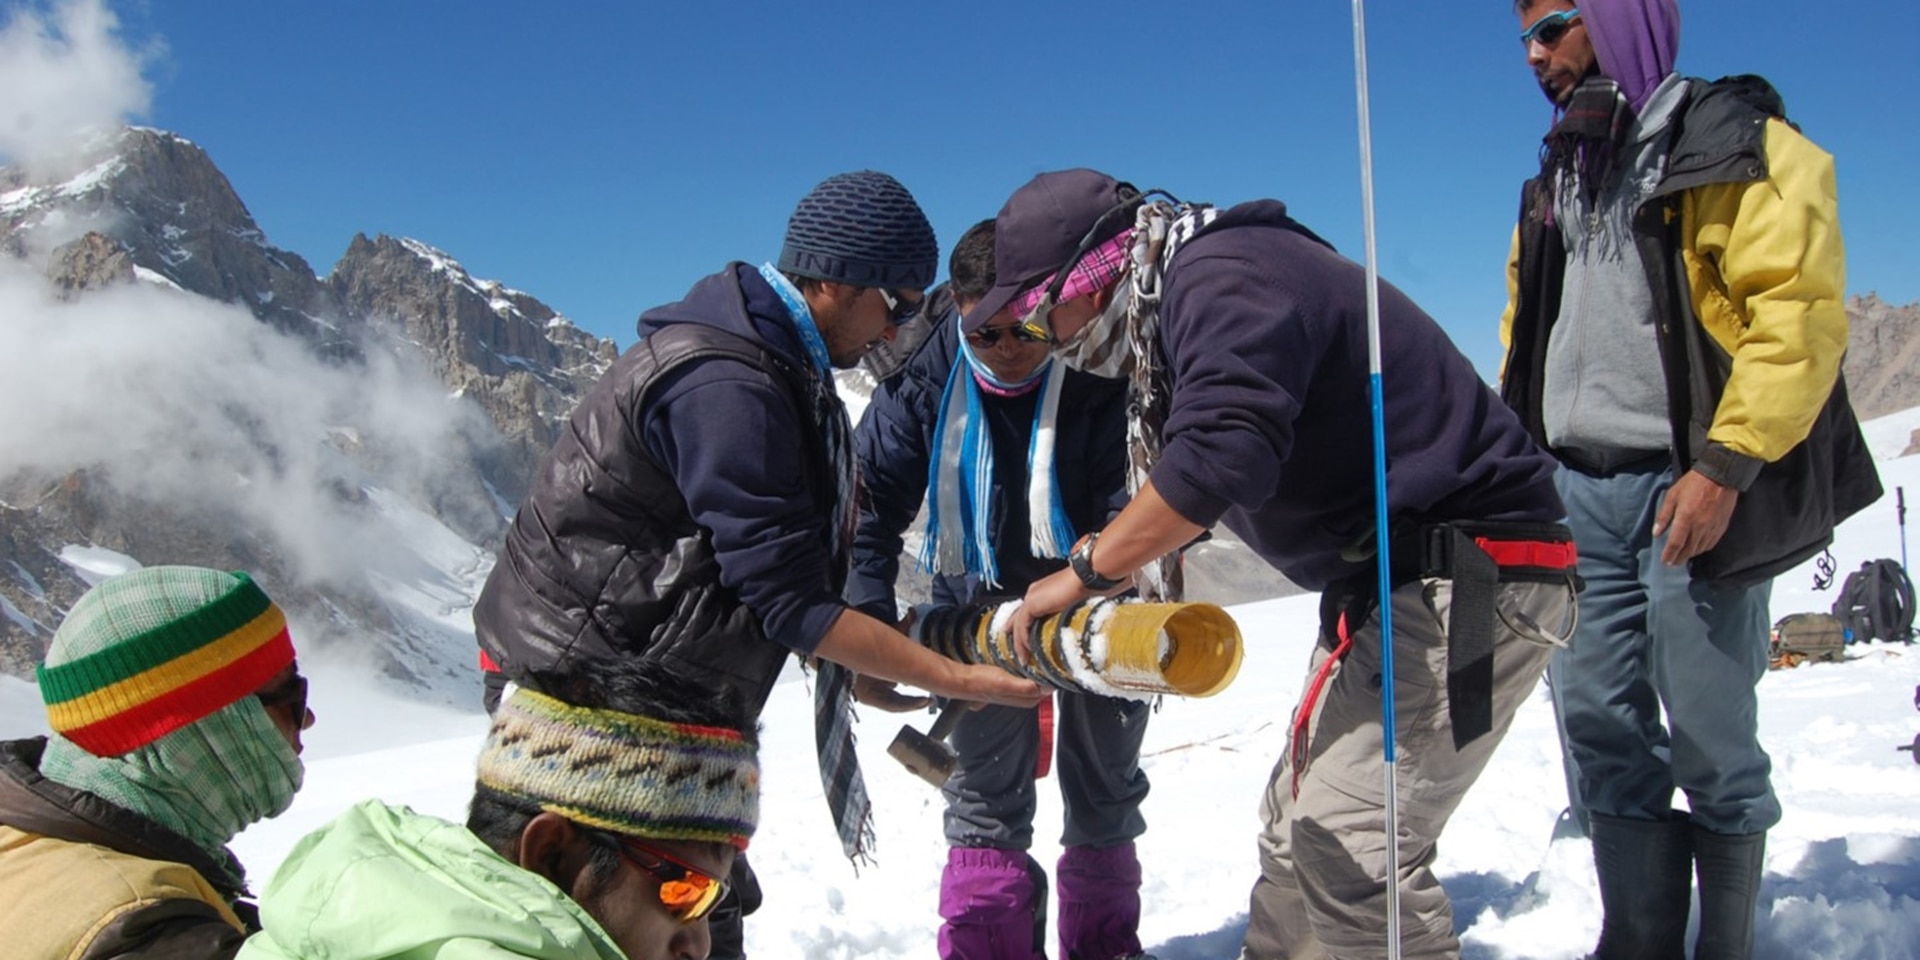 Su una montagna innevata un gruppo di giovani sta posizionando del materiale per il monitoraggio delle condizioni dei ghiacciai.